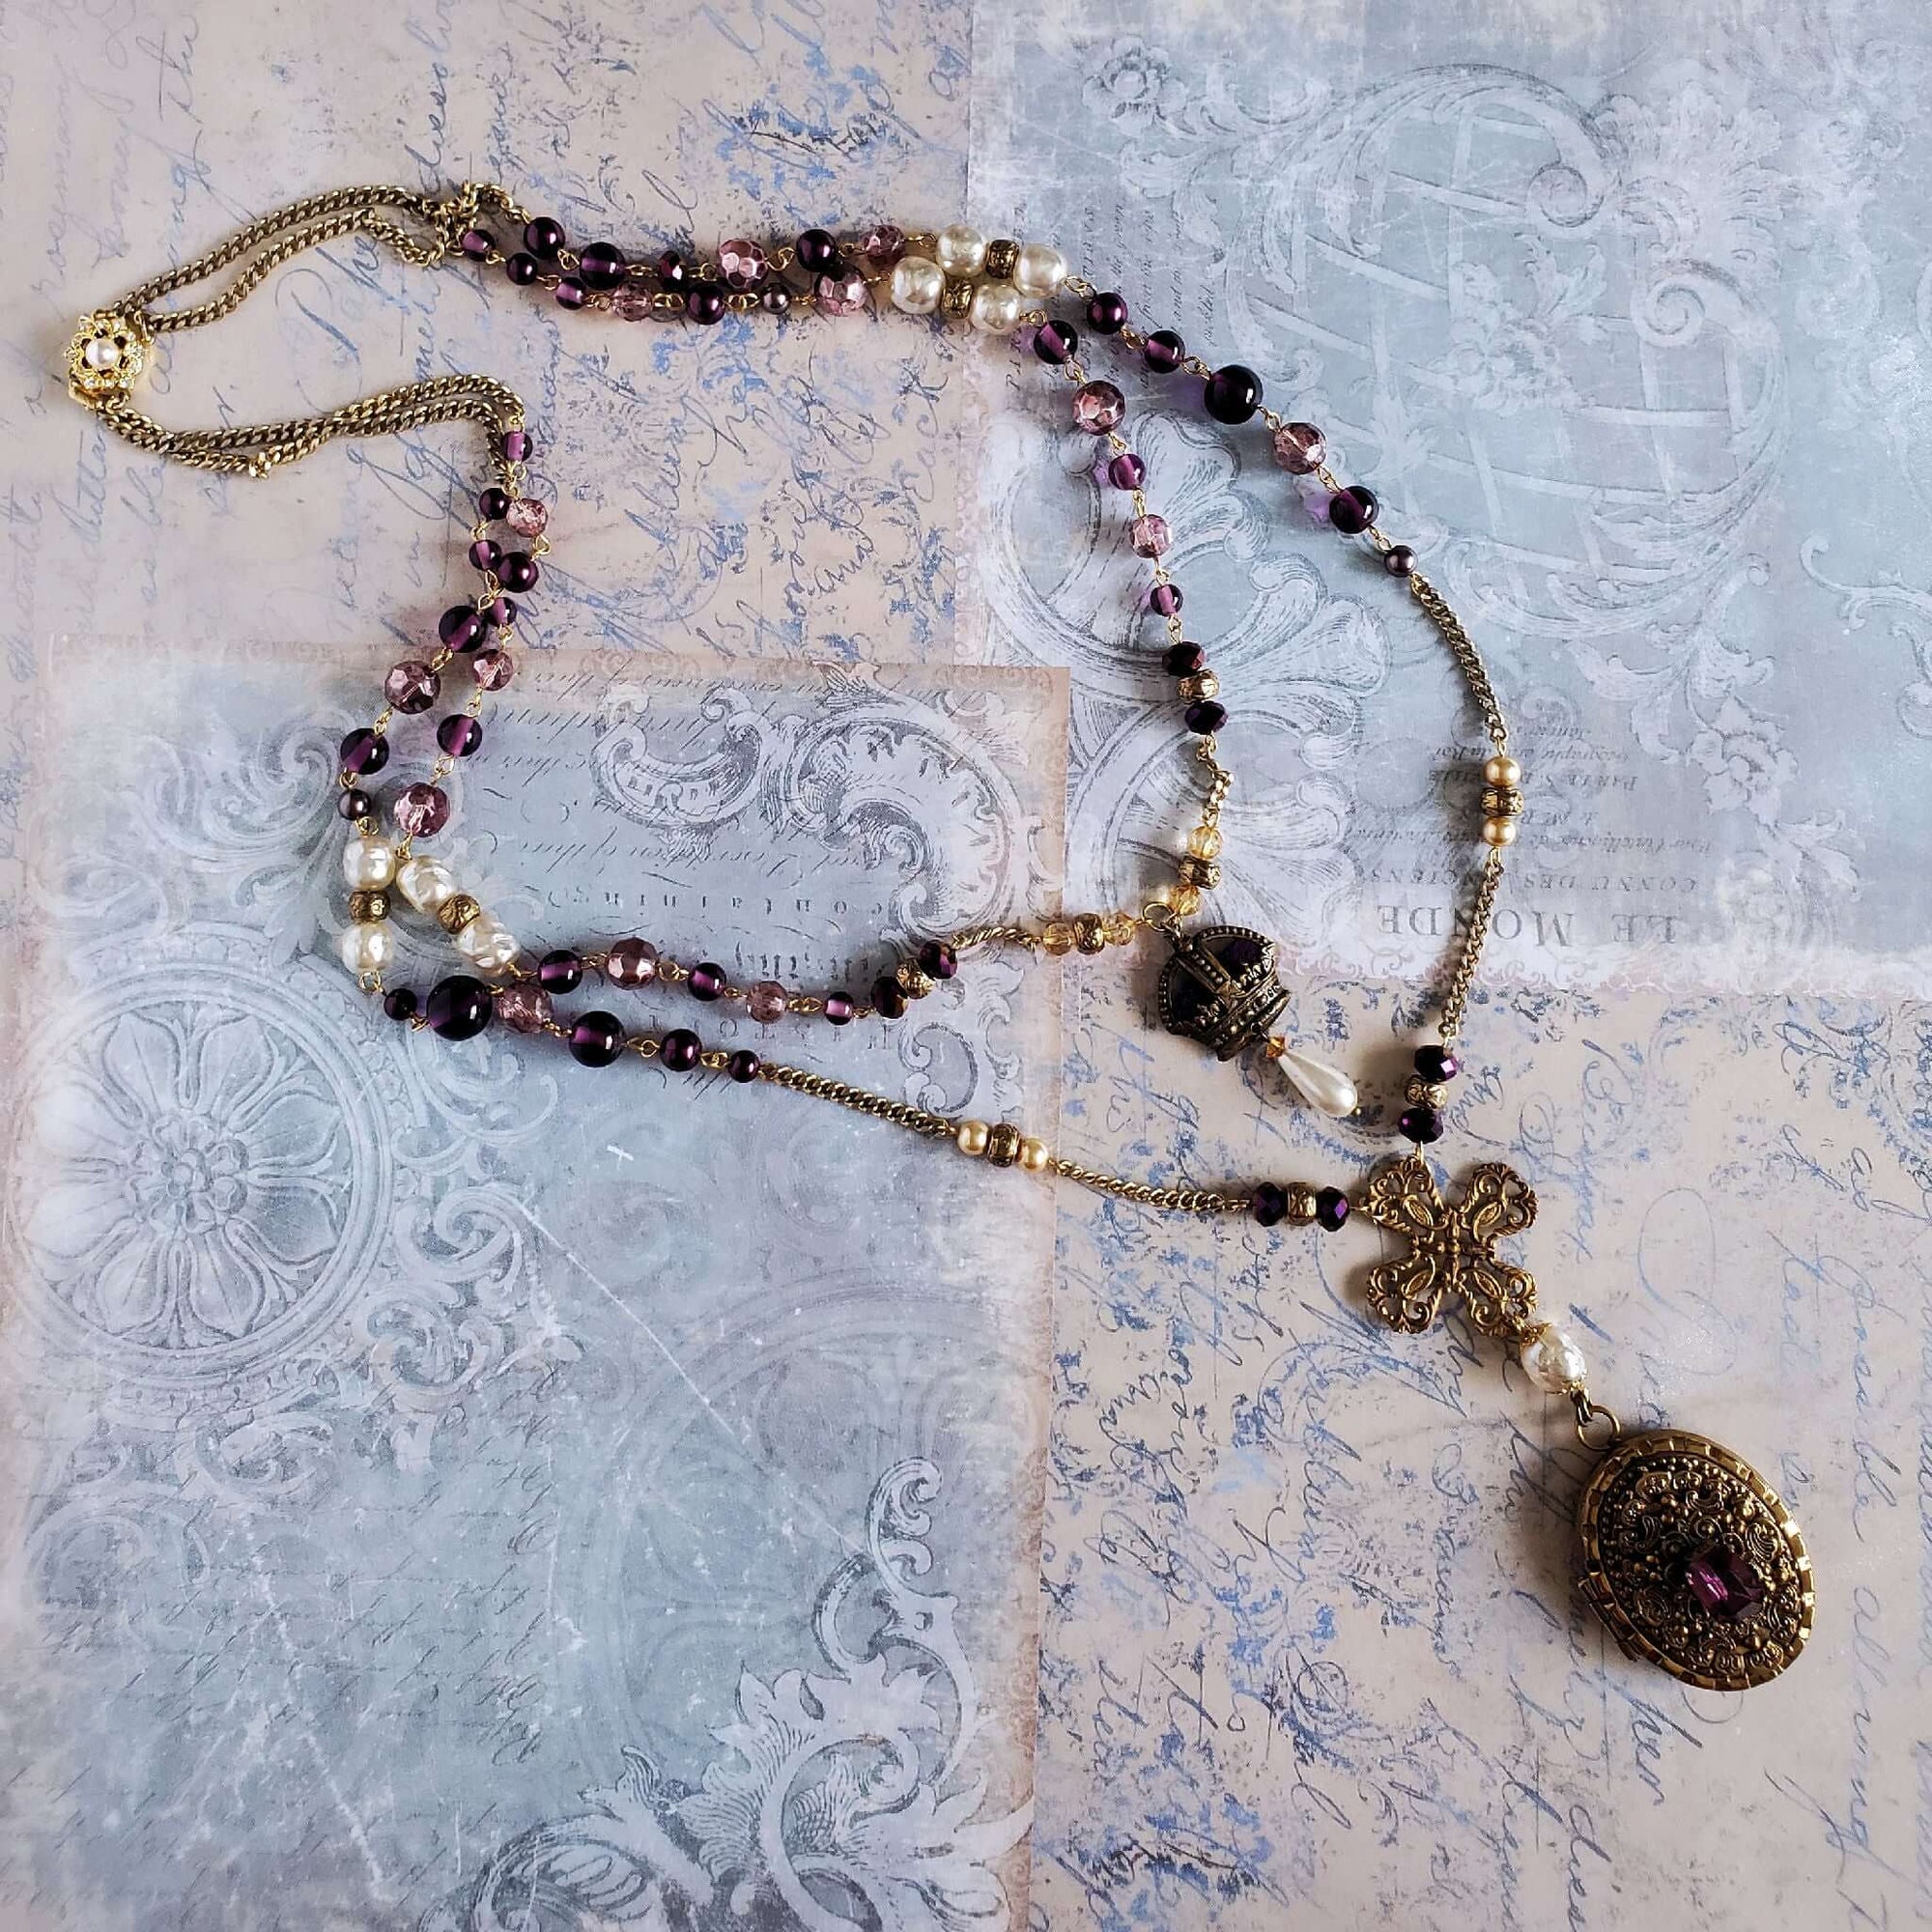 Antique Locket Necklace